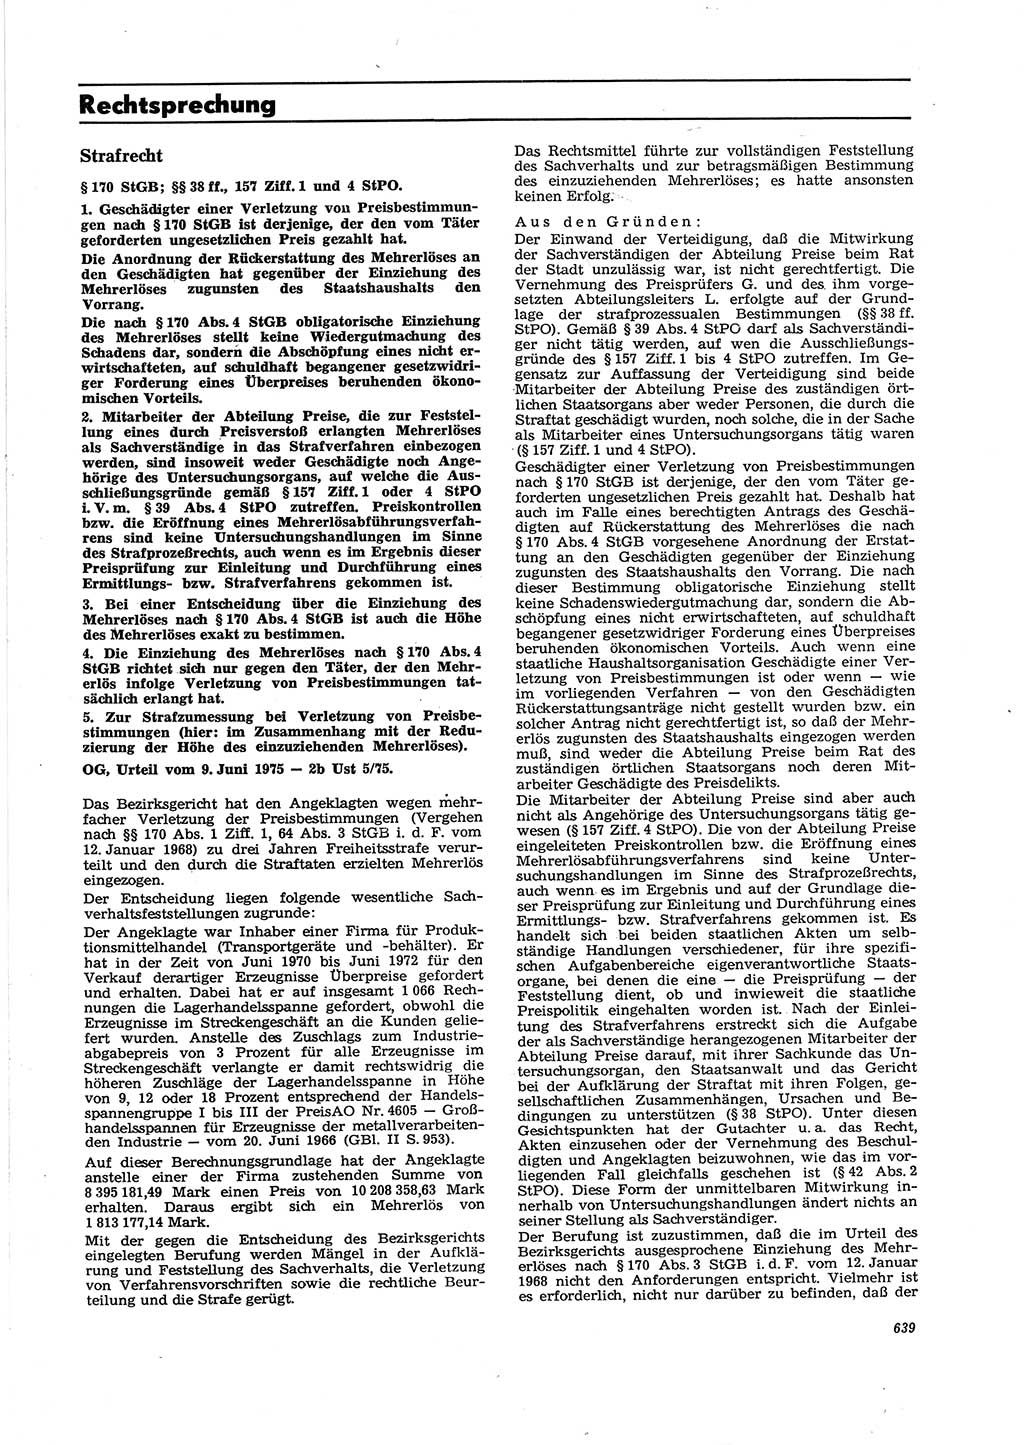 Neue Justiz (NJ), Zeitschrift für Recht und Rechtswissenschaft [Deutsche Demokratische Republik (DDR)], 29. Jahrgang 1975, Seite 639 (NJ DDR 1975, S. 639)